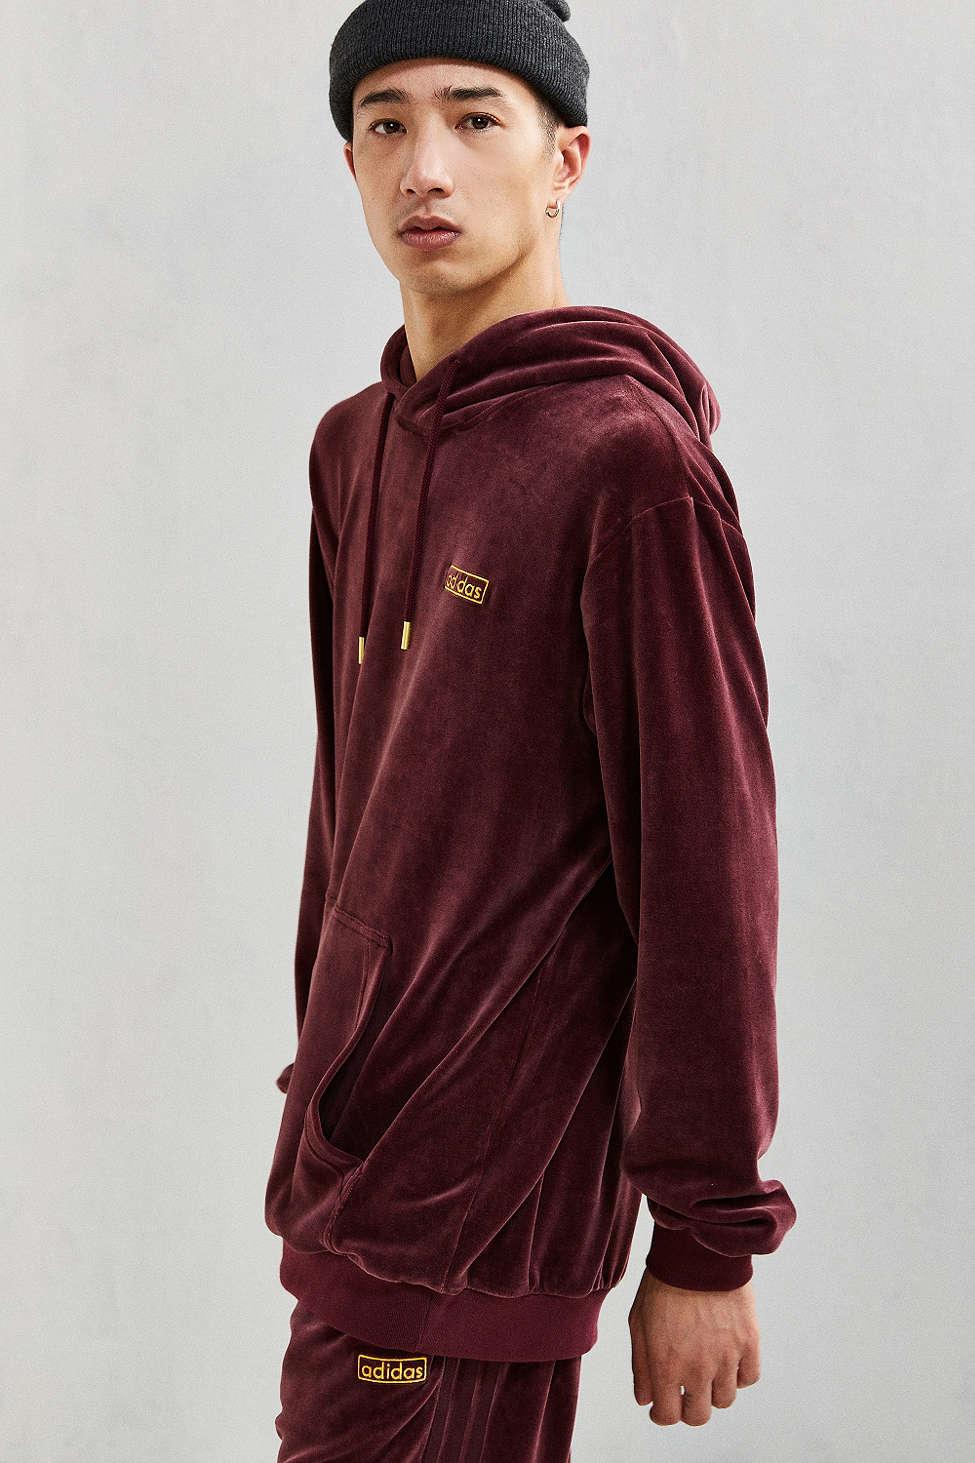 maroon adidas hoodie mens